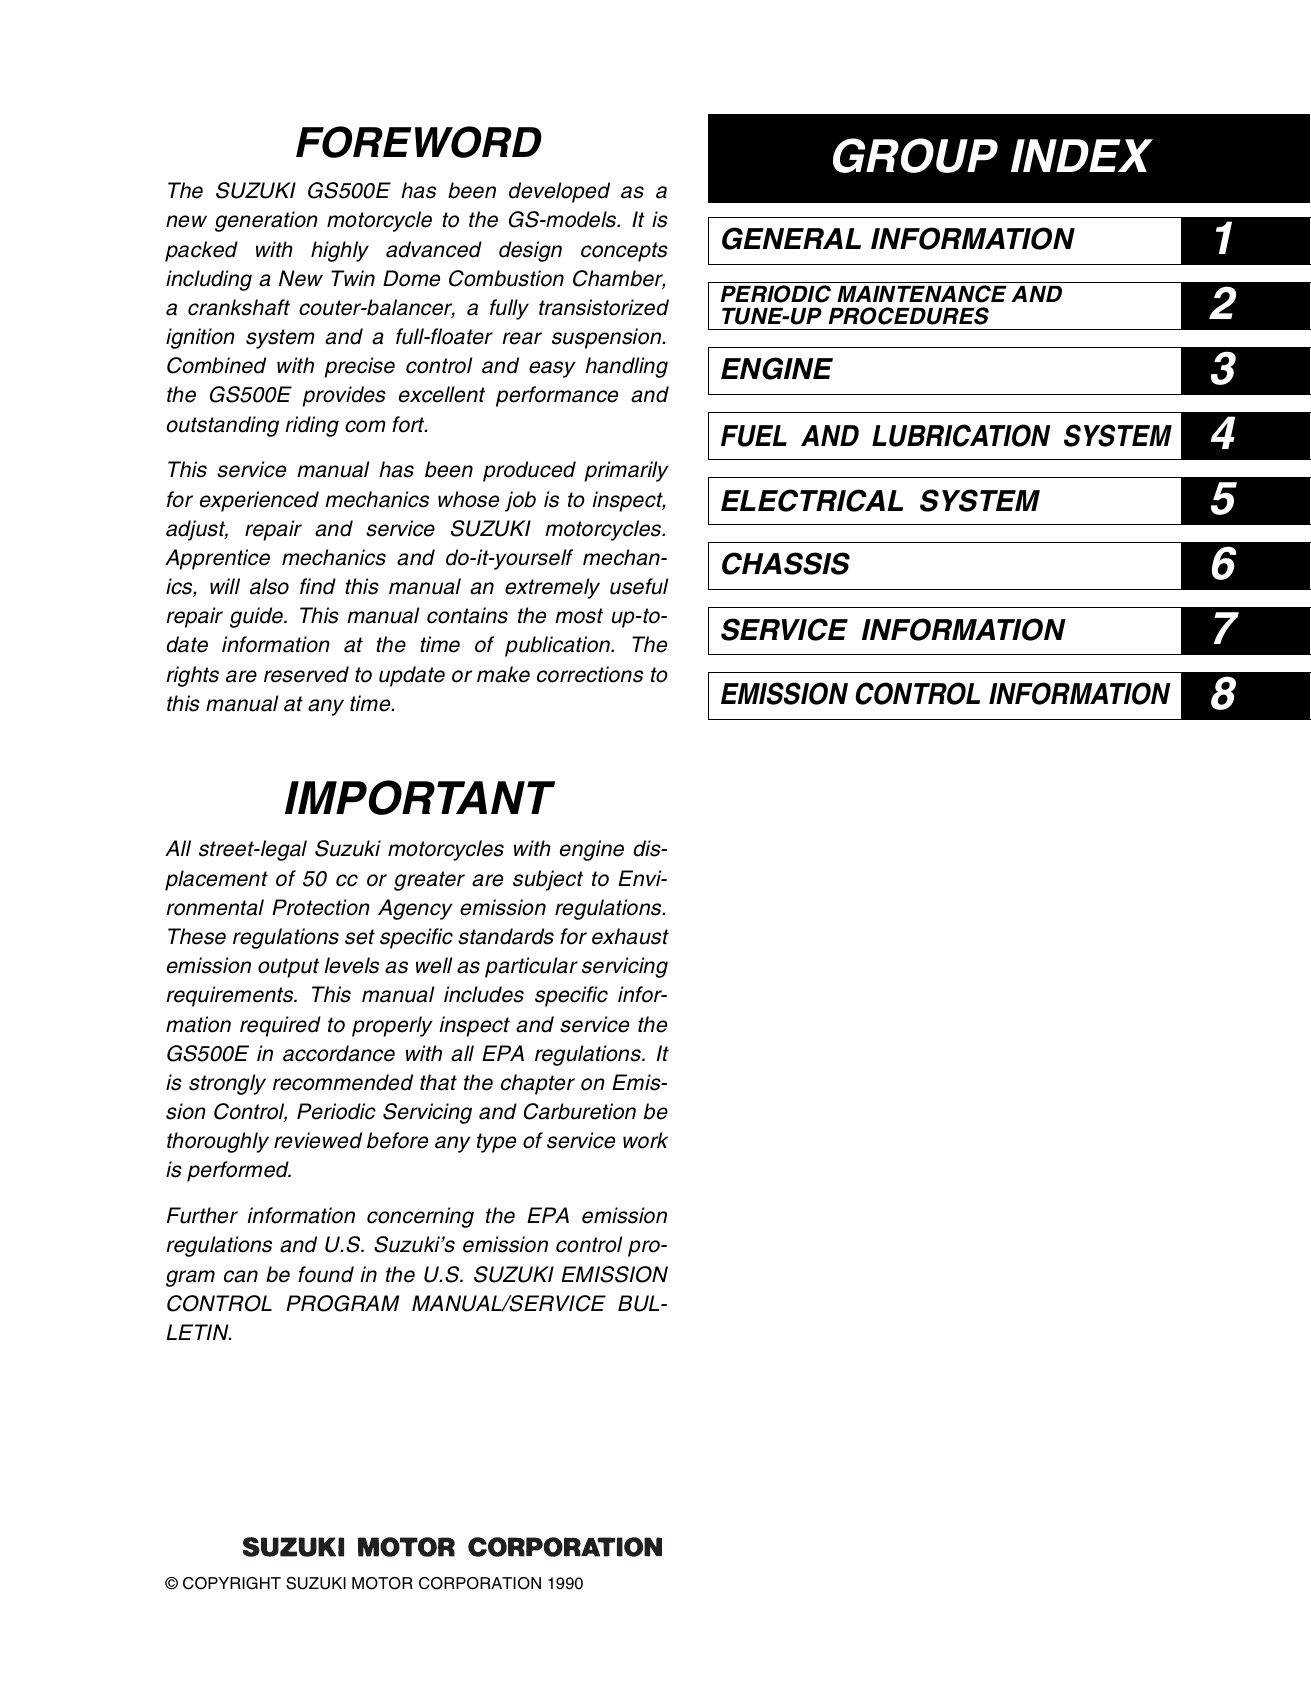 1990-2009 Suzuki GS500 service manual Preview image 1